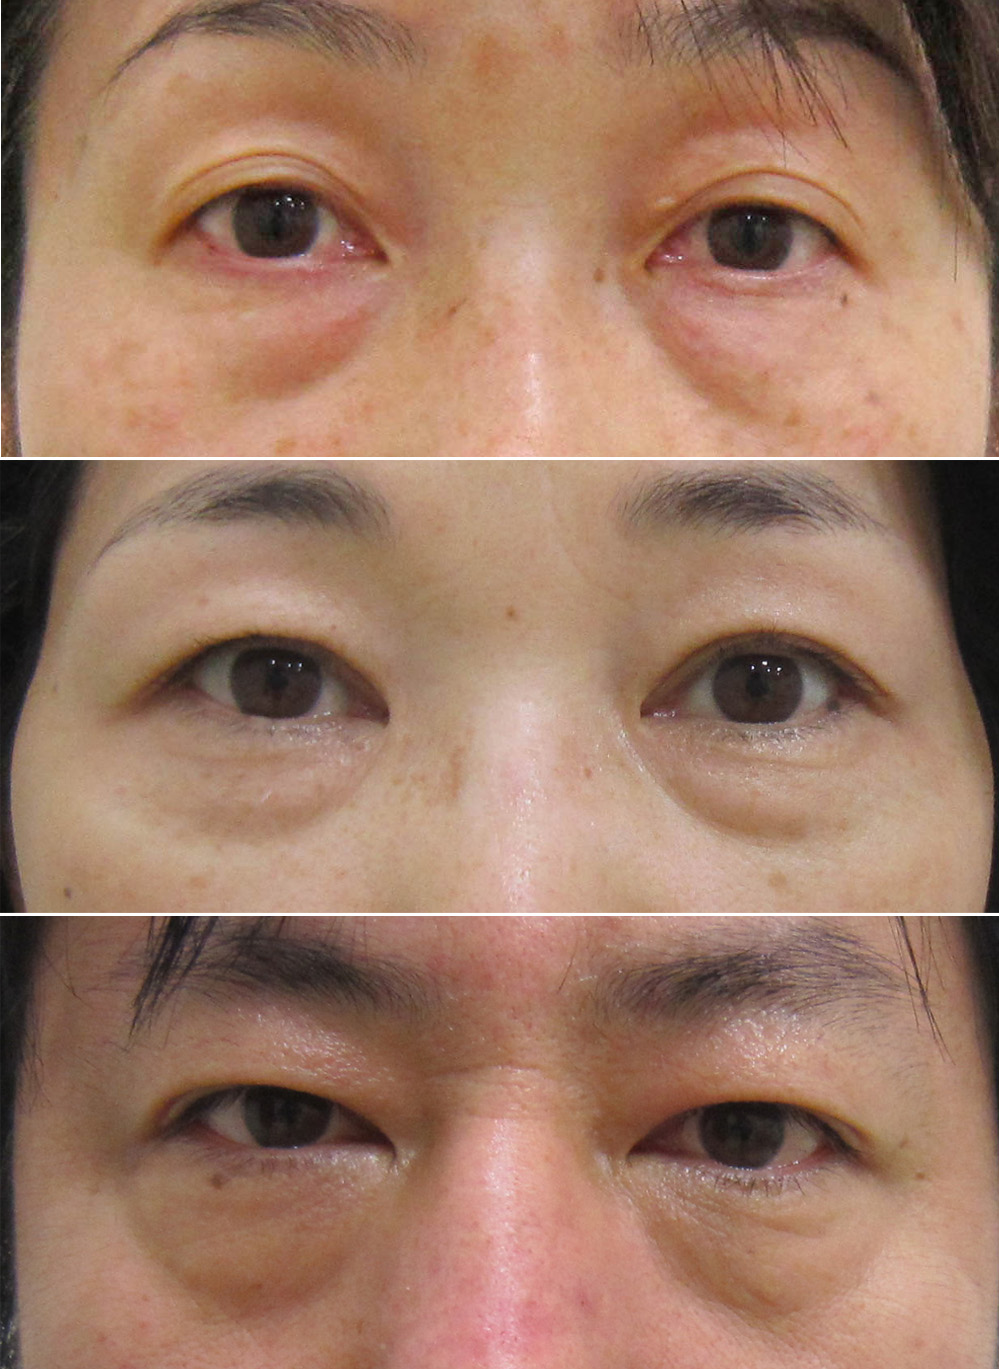 目の下のヒアルロン酸注入 目の下のくぼみ クマ治療の注意点